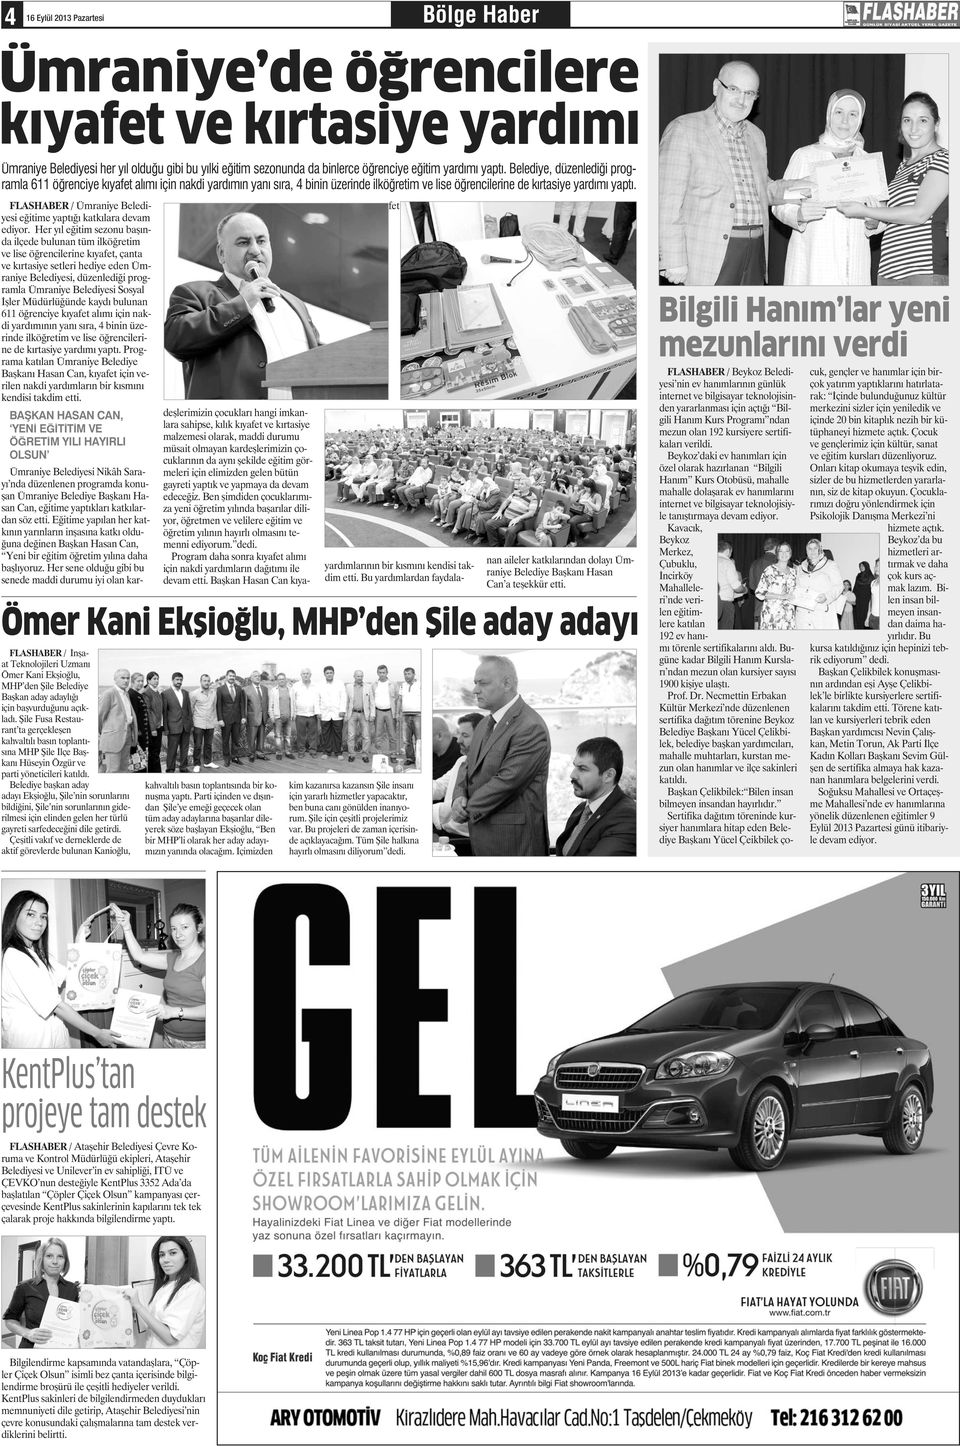 FLASHABER / İnşaat Teknolojileri Uzmanı Ömer Kani Ekşioğlu, MHP den Şile Belediye Başkan aday adaylığı için başvurduğunu açıkladı.